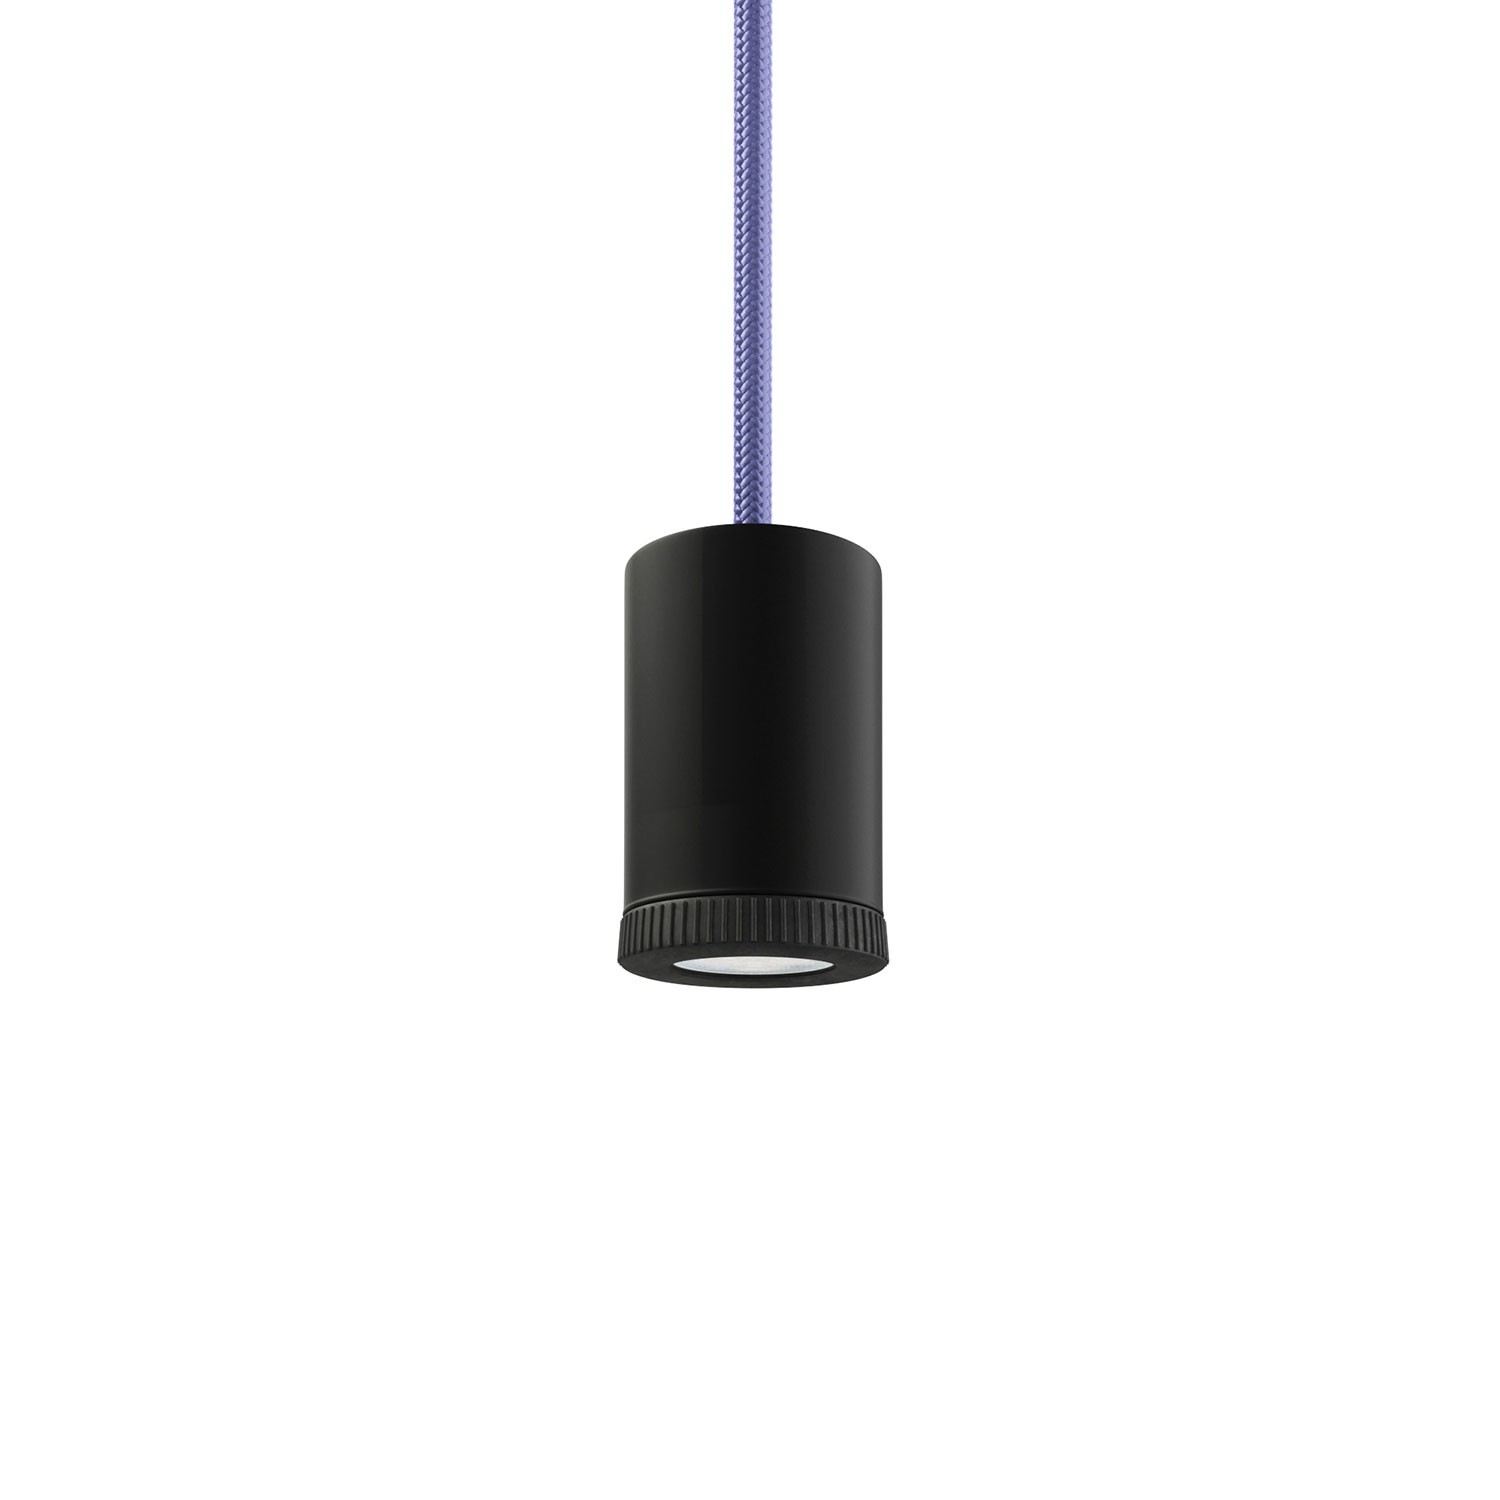 Mini LED Spotlight Strahler GU1d0